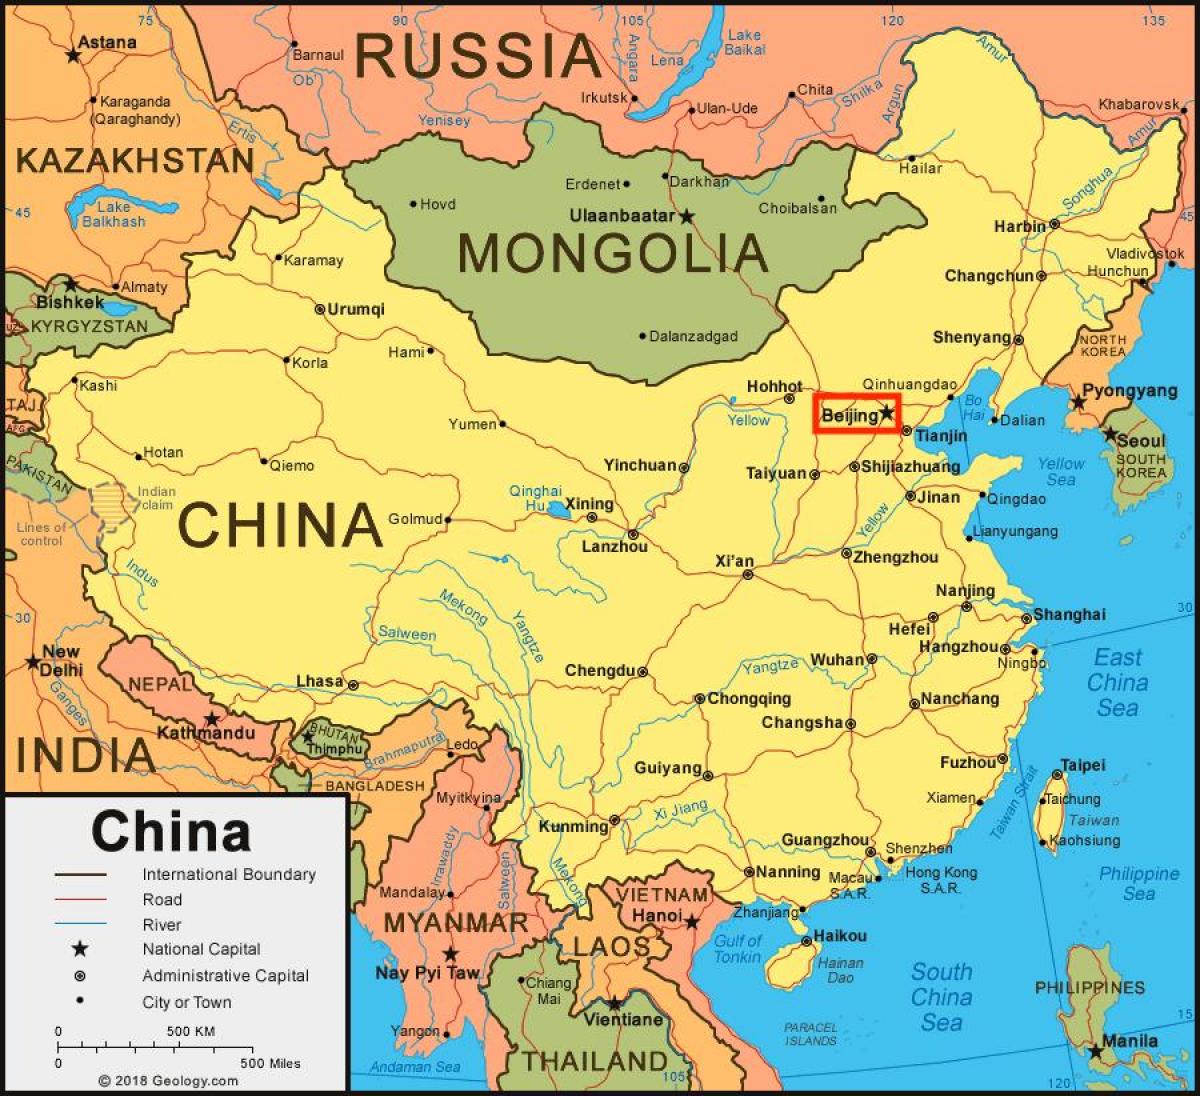 Beijing (Peking) on China map